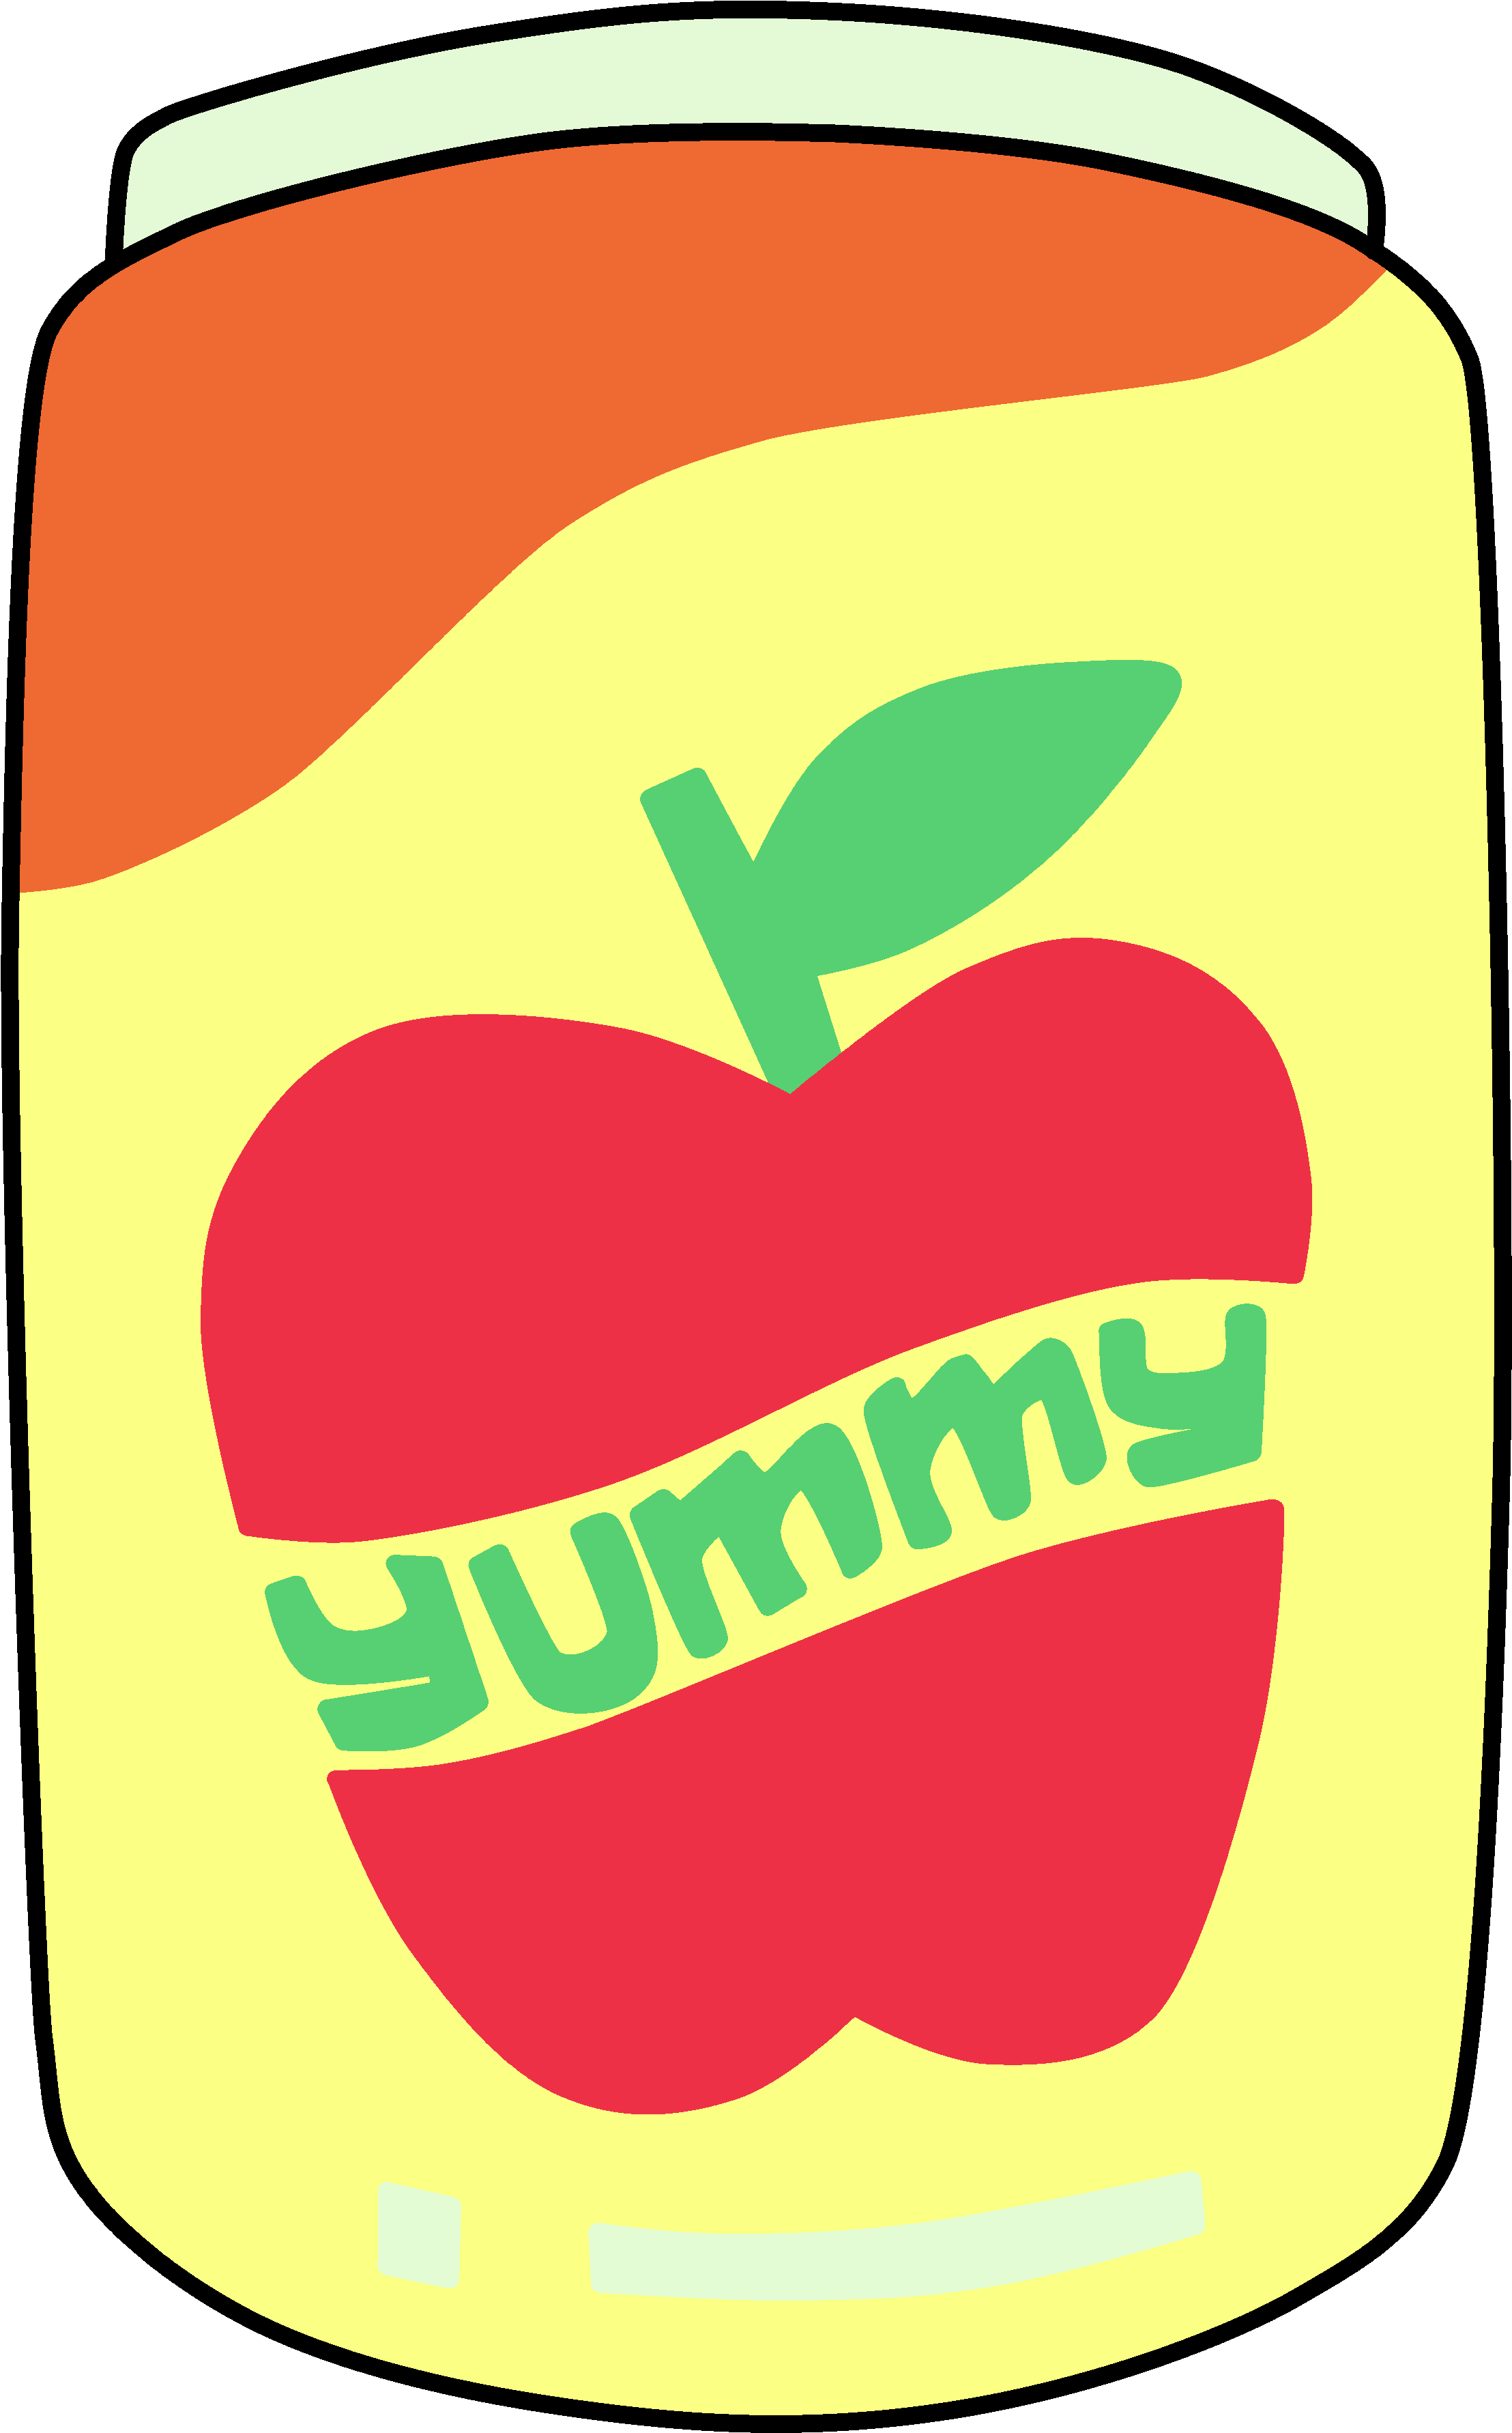 Yummy Apple Juice - Emblem (2555x3878)